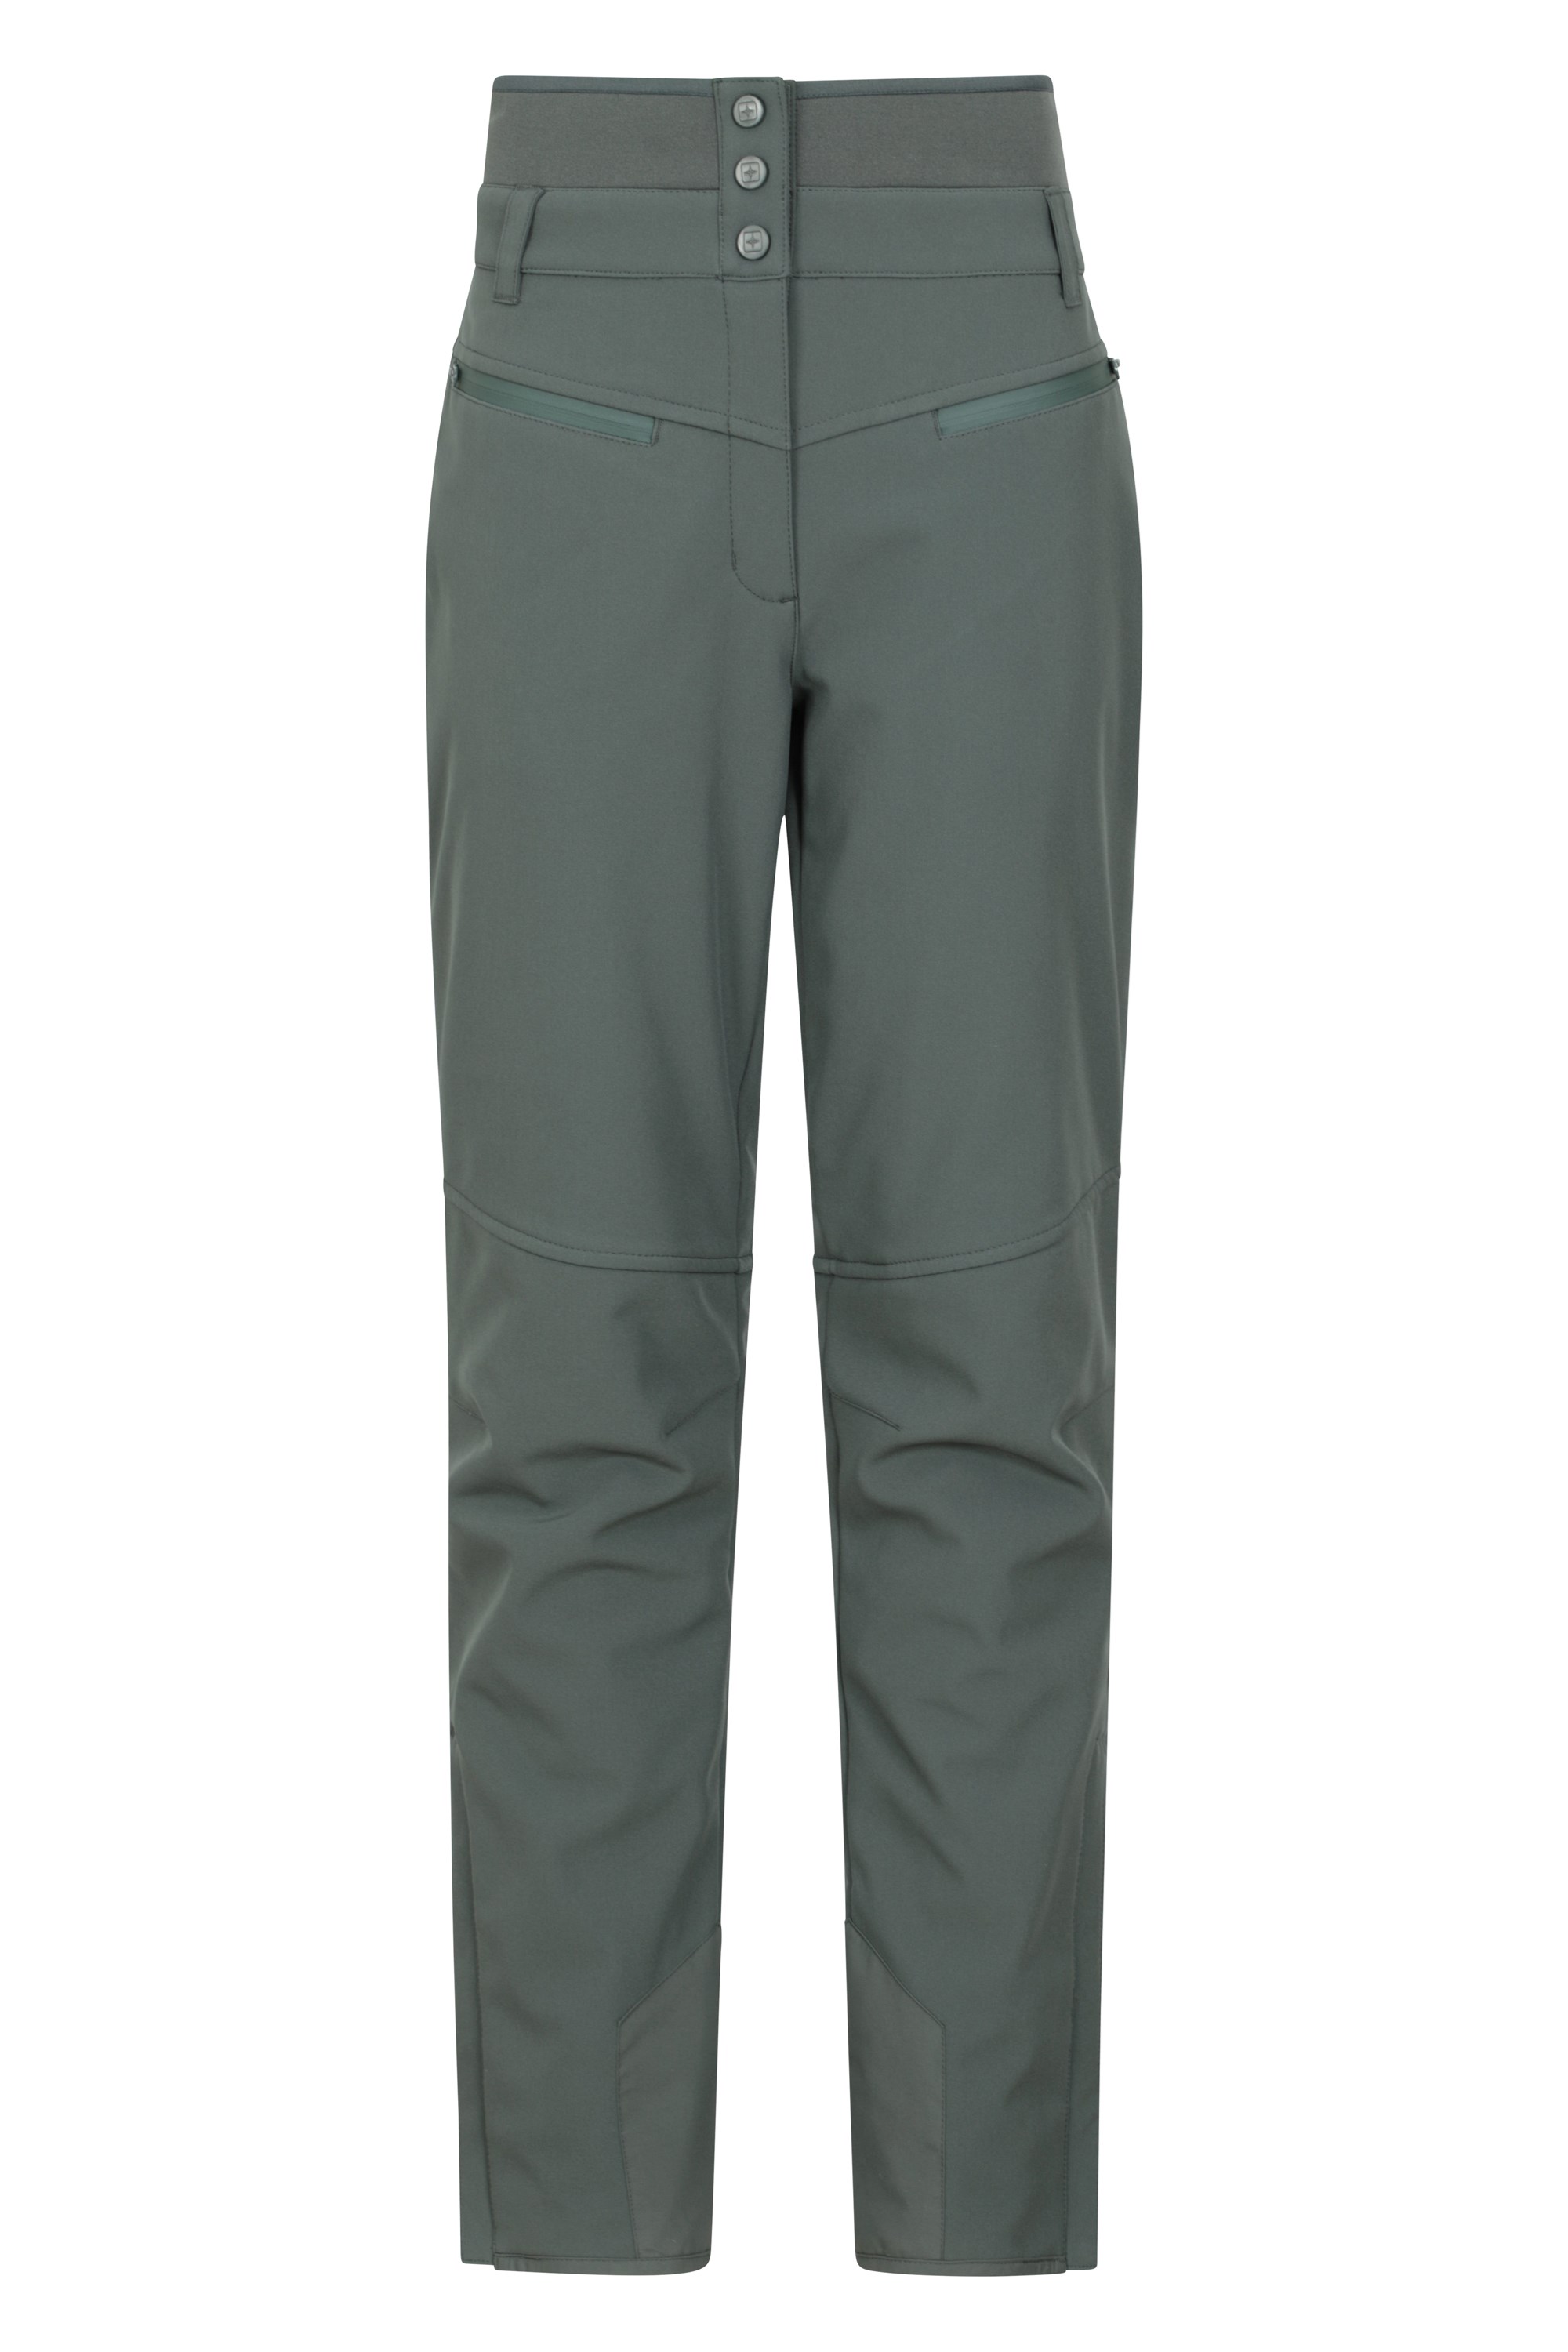 Men's Waterproof Pants | Waterproof Trousers - Rab® EU